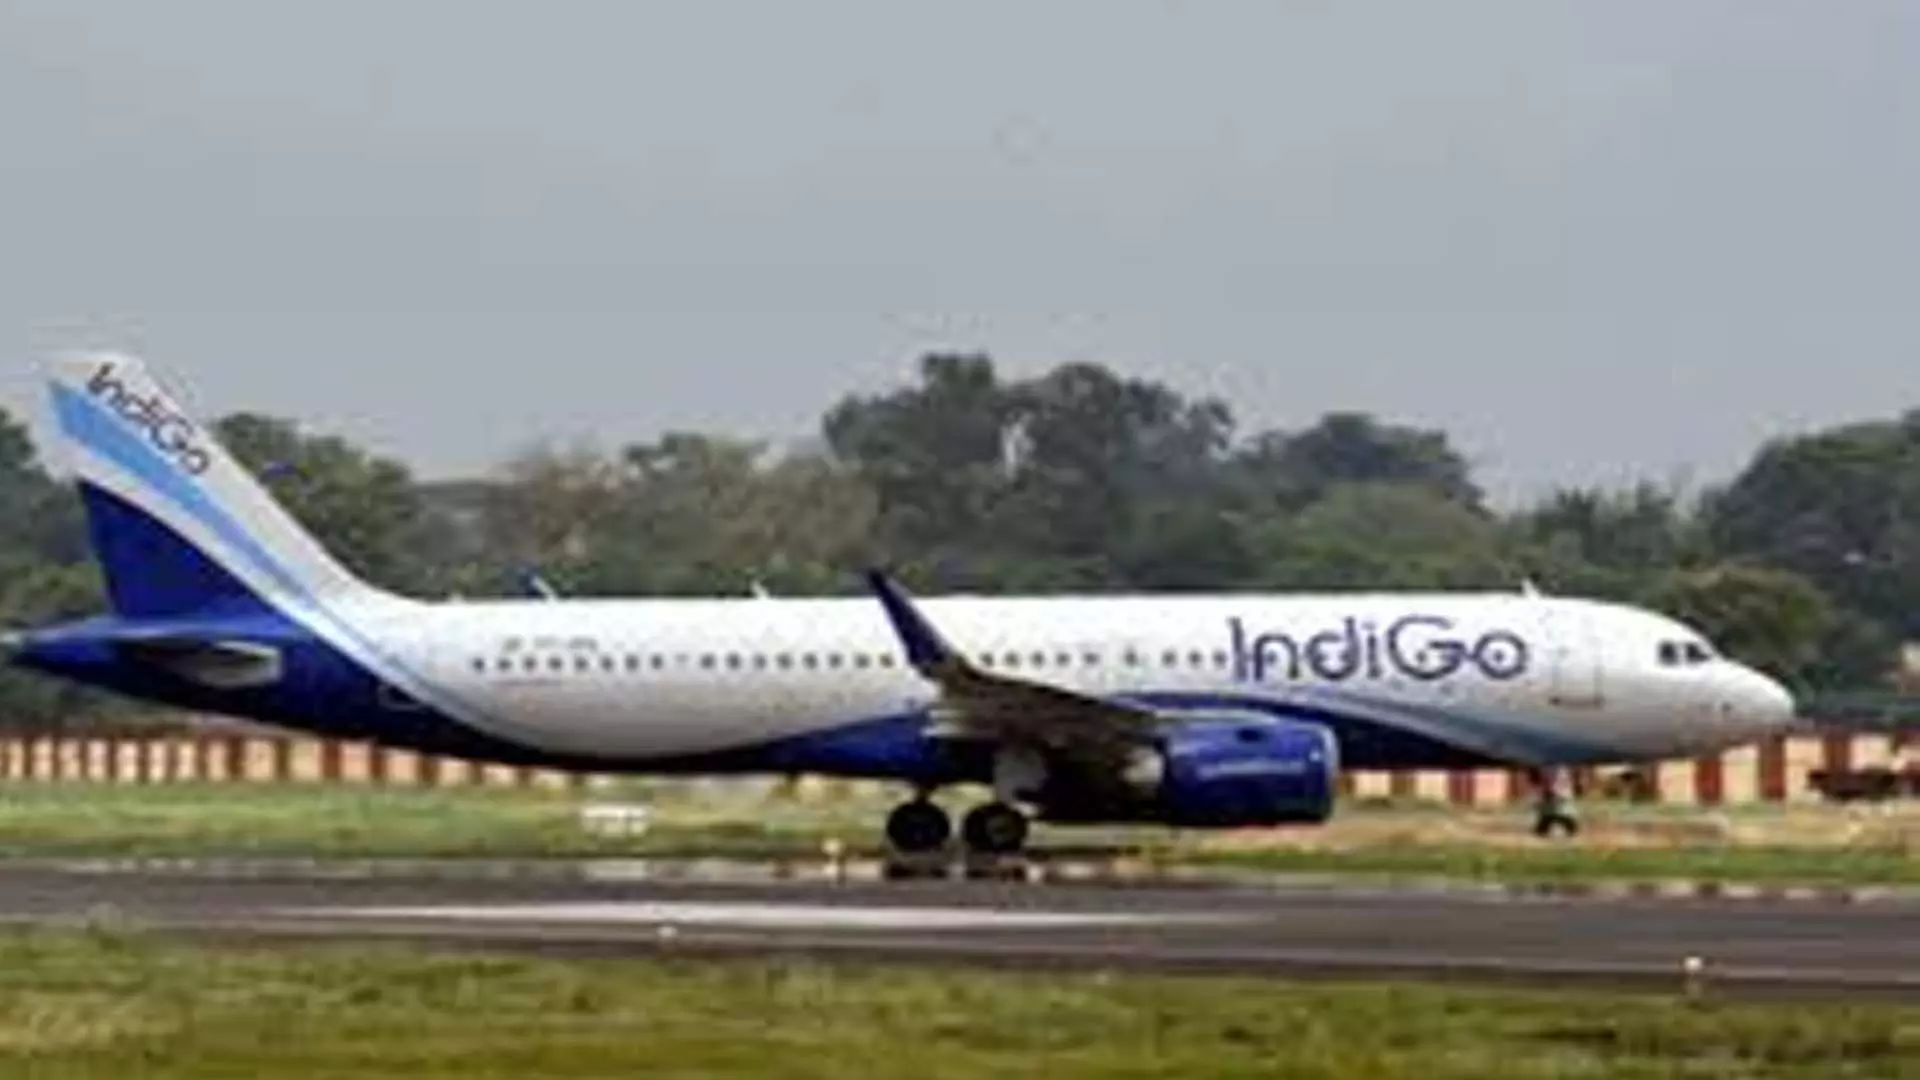 Delhi : दिल्ली हवाई अड्डे पर इंडिगो विमान में बम की धमकी झूठी निकली